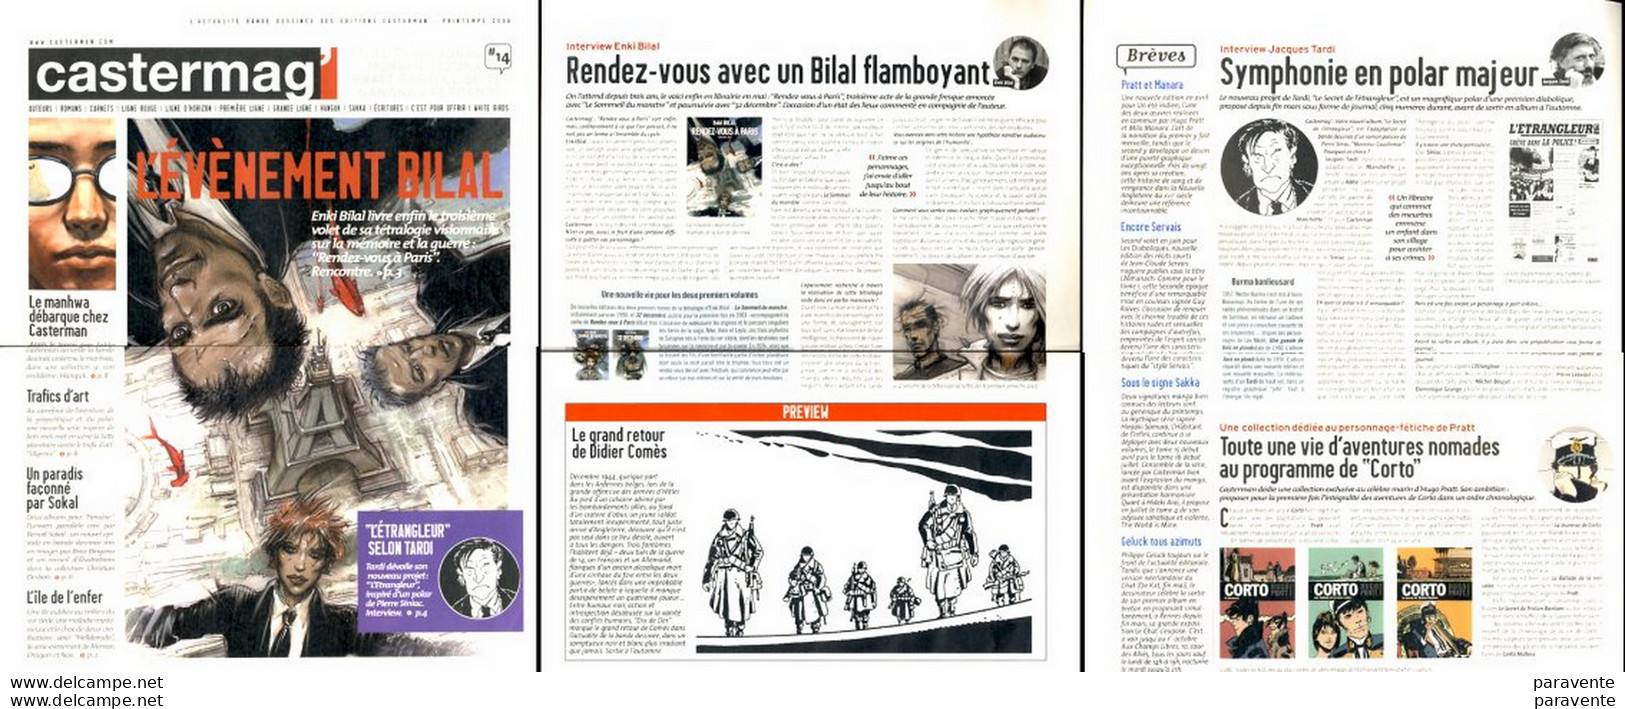 Magazine CASTERMAG 14 (2006) Avec BILAL COMES TARDI PRATT SOKAL - Bilal